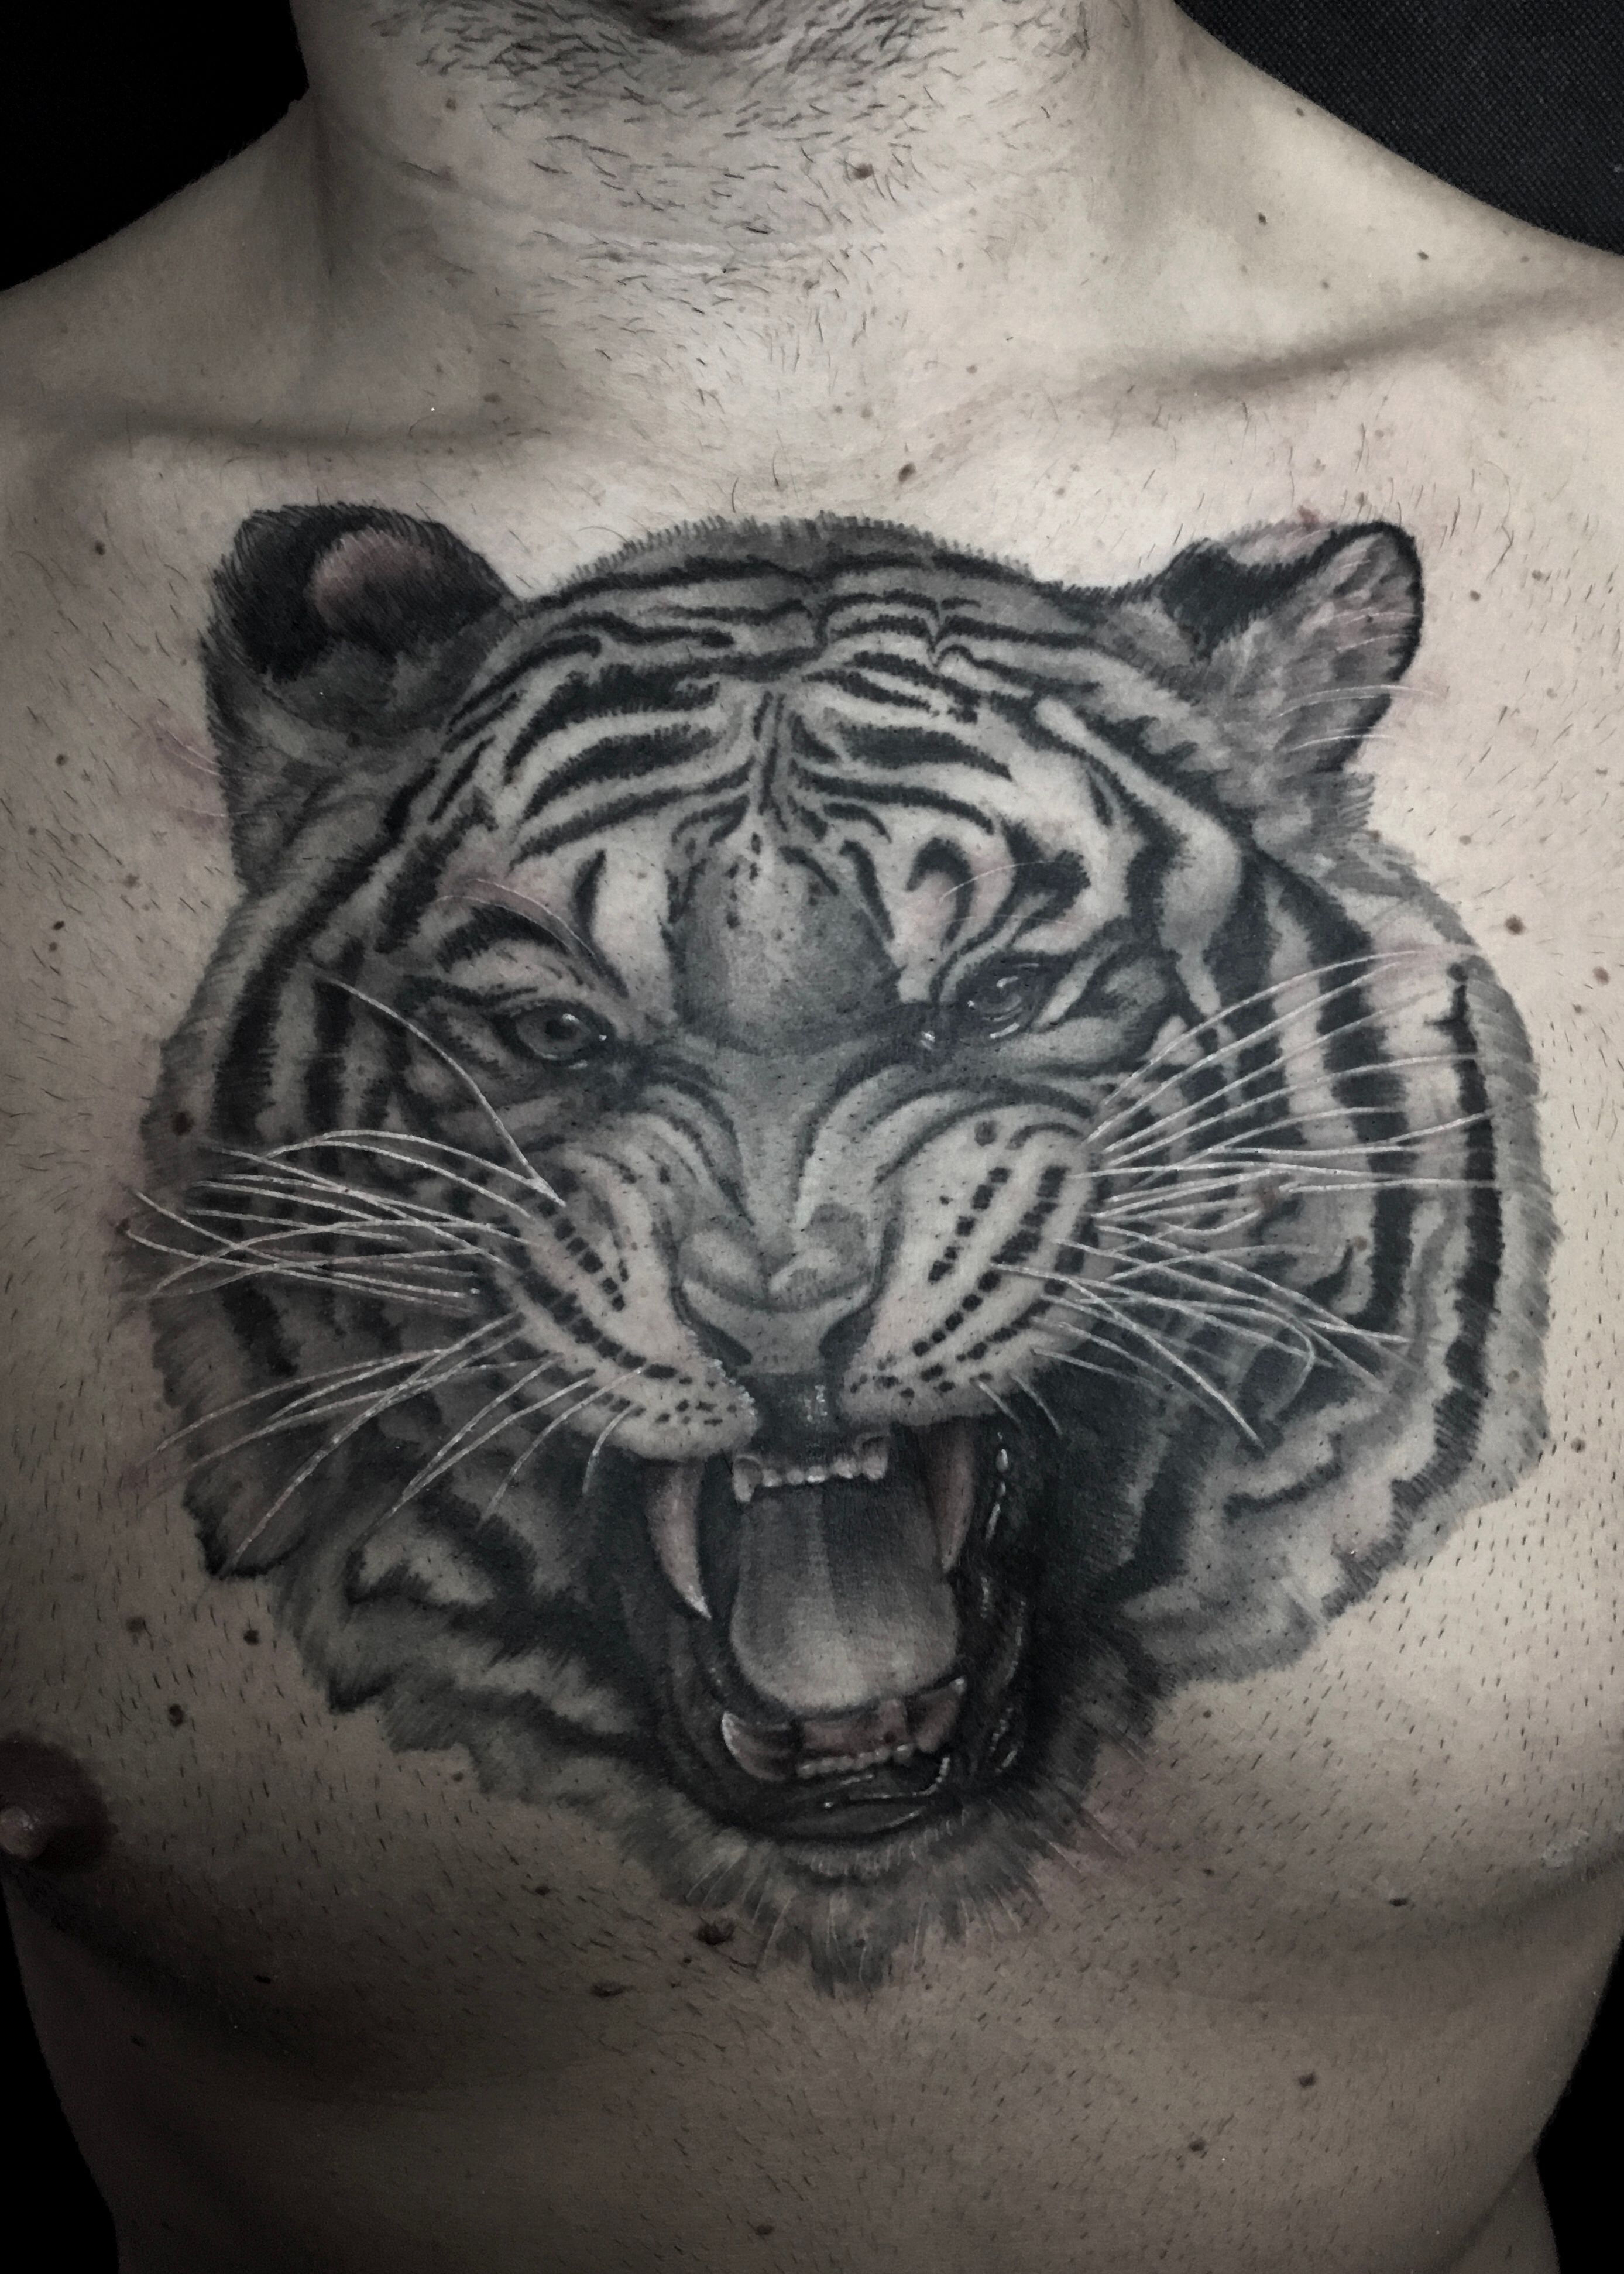 Chest Tattoo by CarlosBreakOne at TwinFreaks Tattoo Studio Porto,Portugal :  r/TattooDesigns